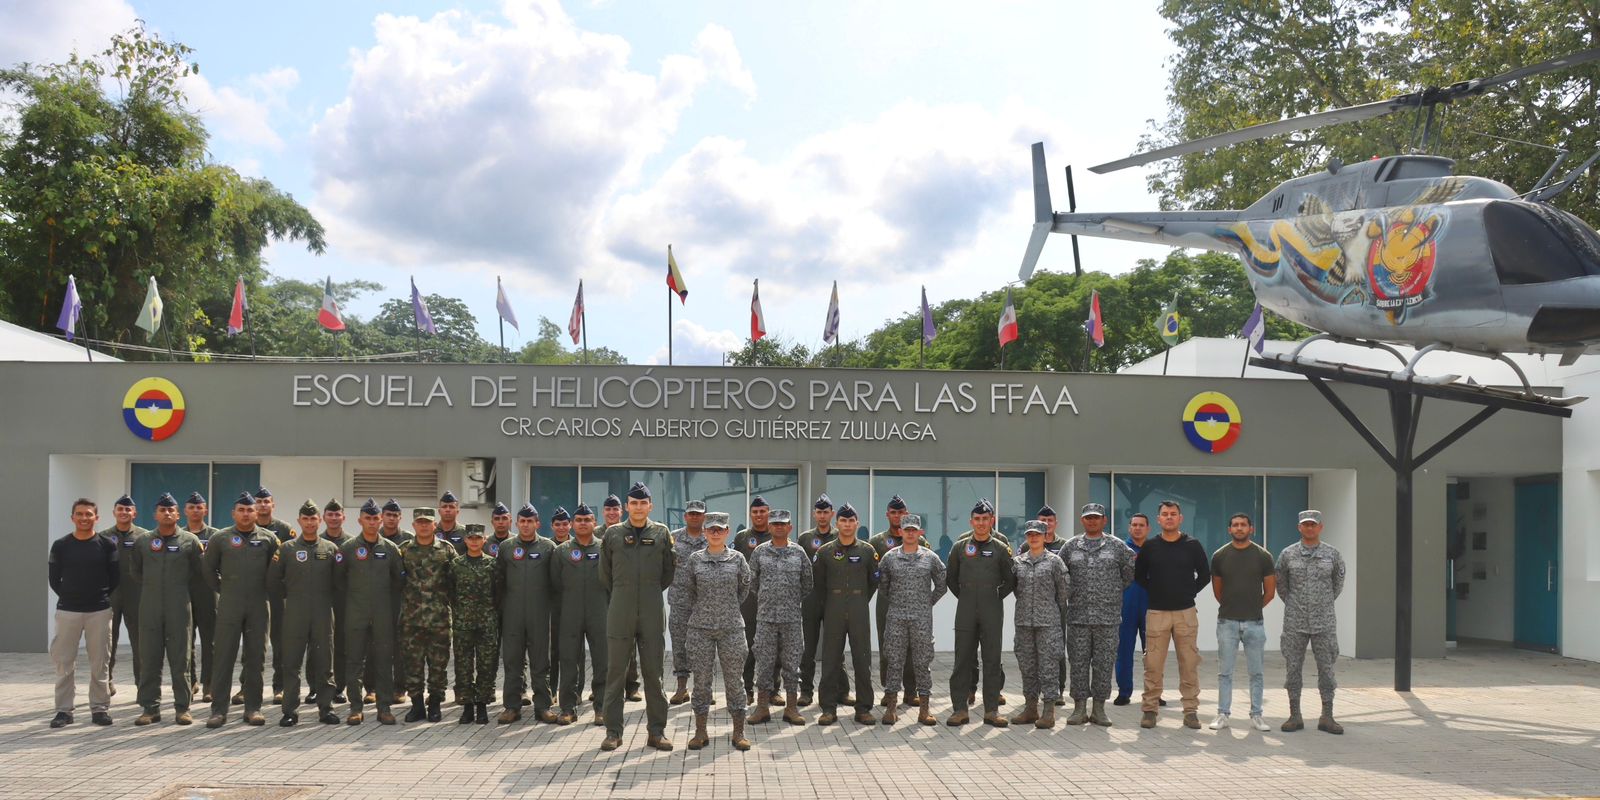 Alumnos del curso de Seguridad Operacional, visitaron el Laboratorio de Investigación de Accidentes en Melgar, Tolima